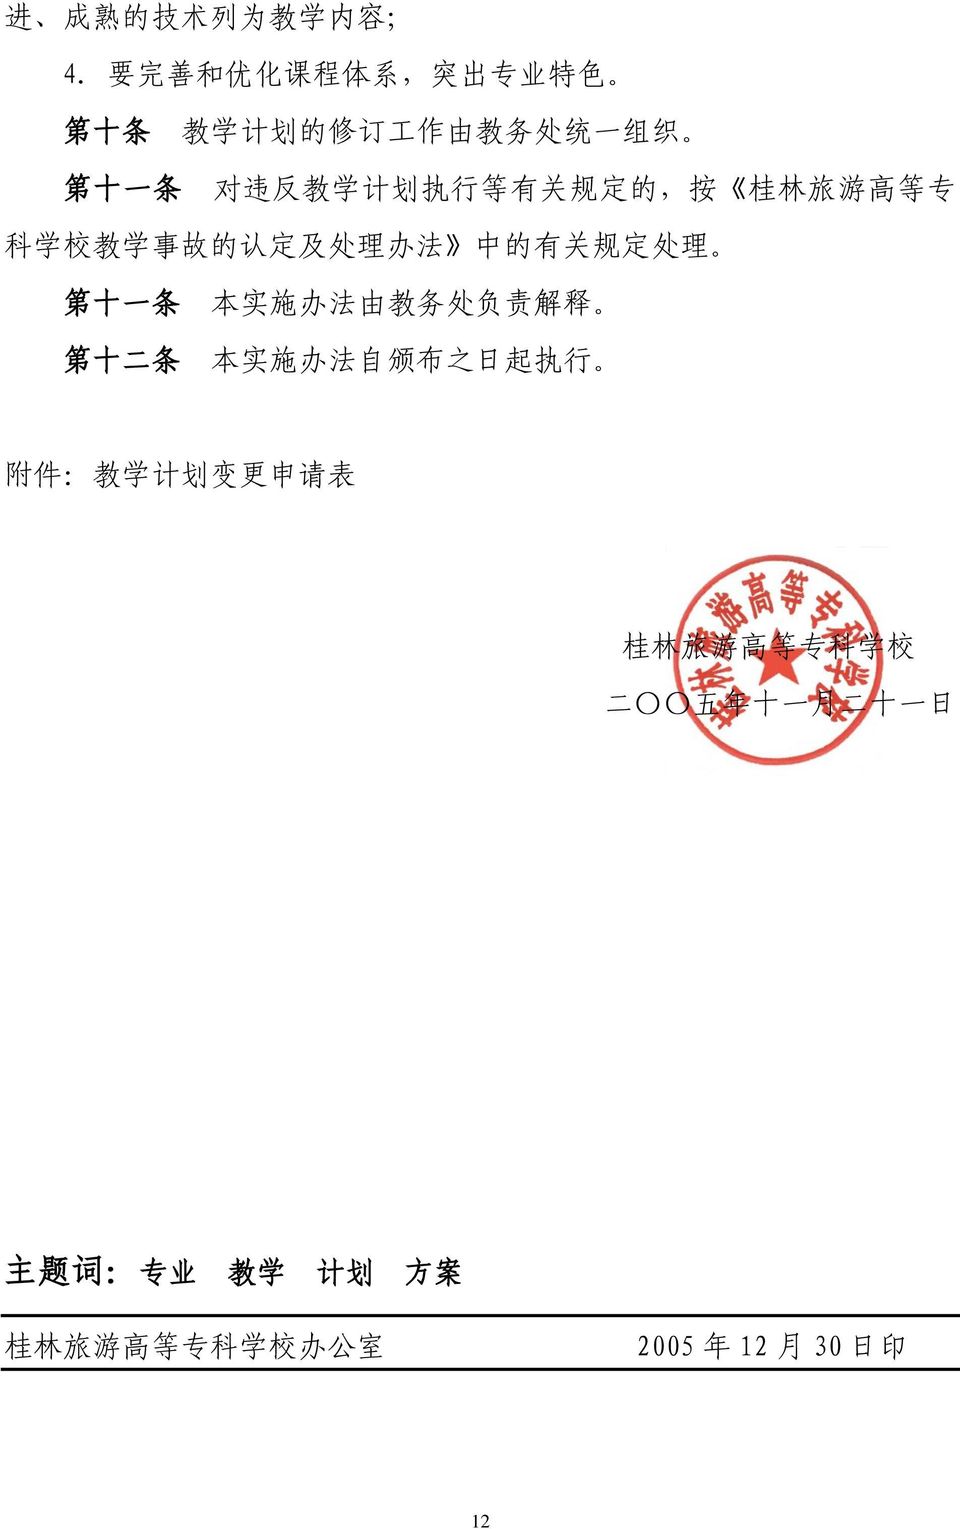 关 规 定 的, 按 桂 林 旅 游 高 等 专 科 学 校 教 学 事 故 的 认 定 及 处 理 办 法 中 的 有 关 规 定 处 理 第 十 一 条 本 实 施 办 法 由 教 务 处 负 责 解